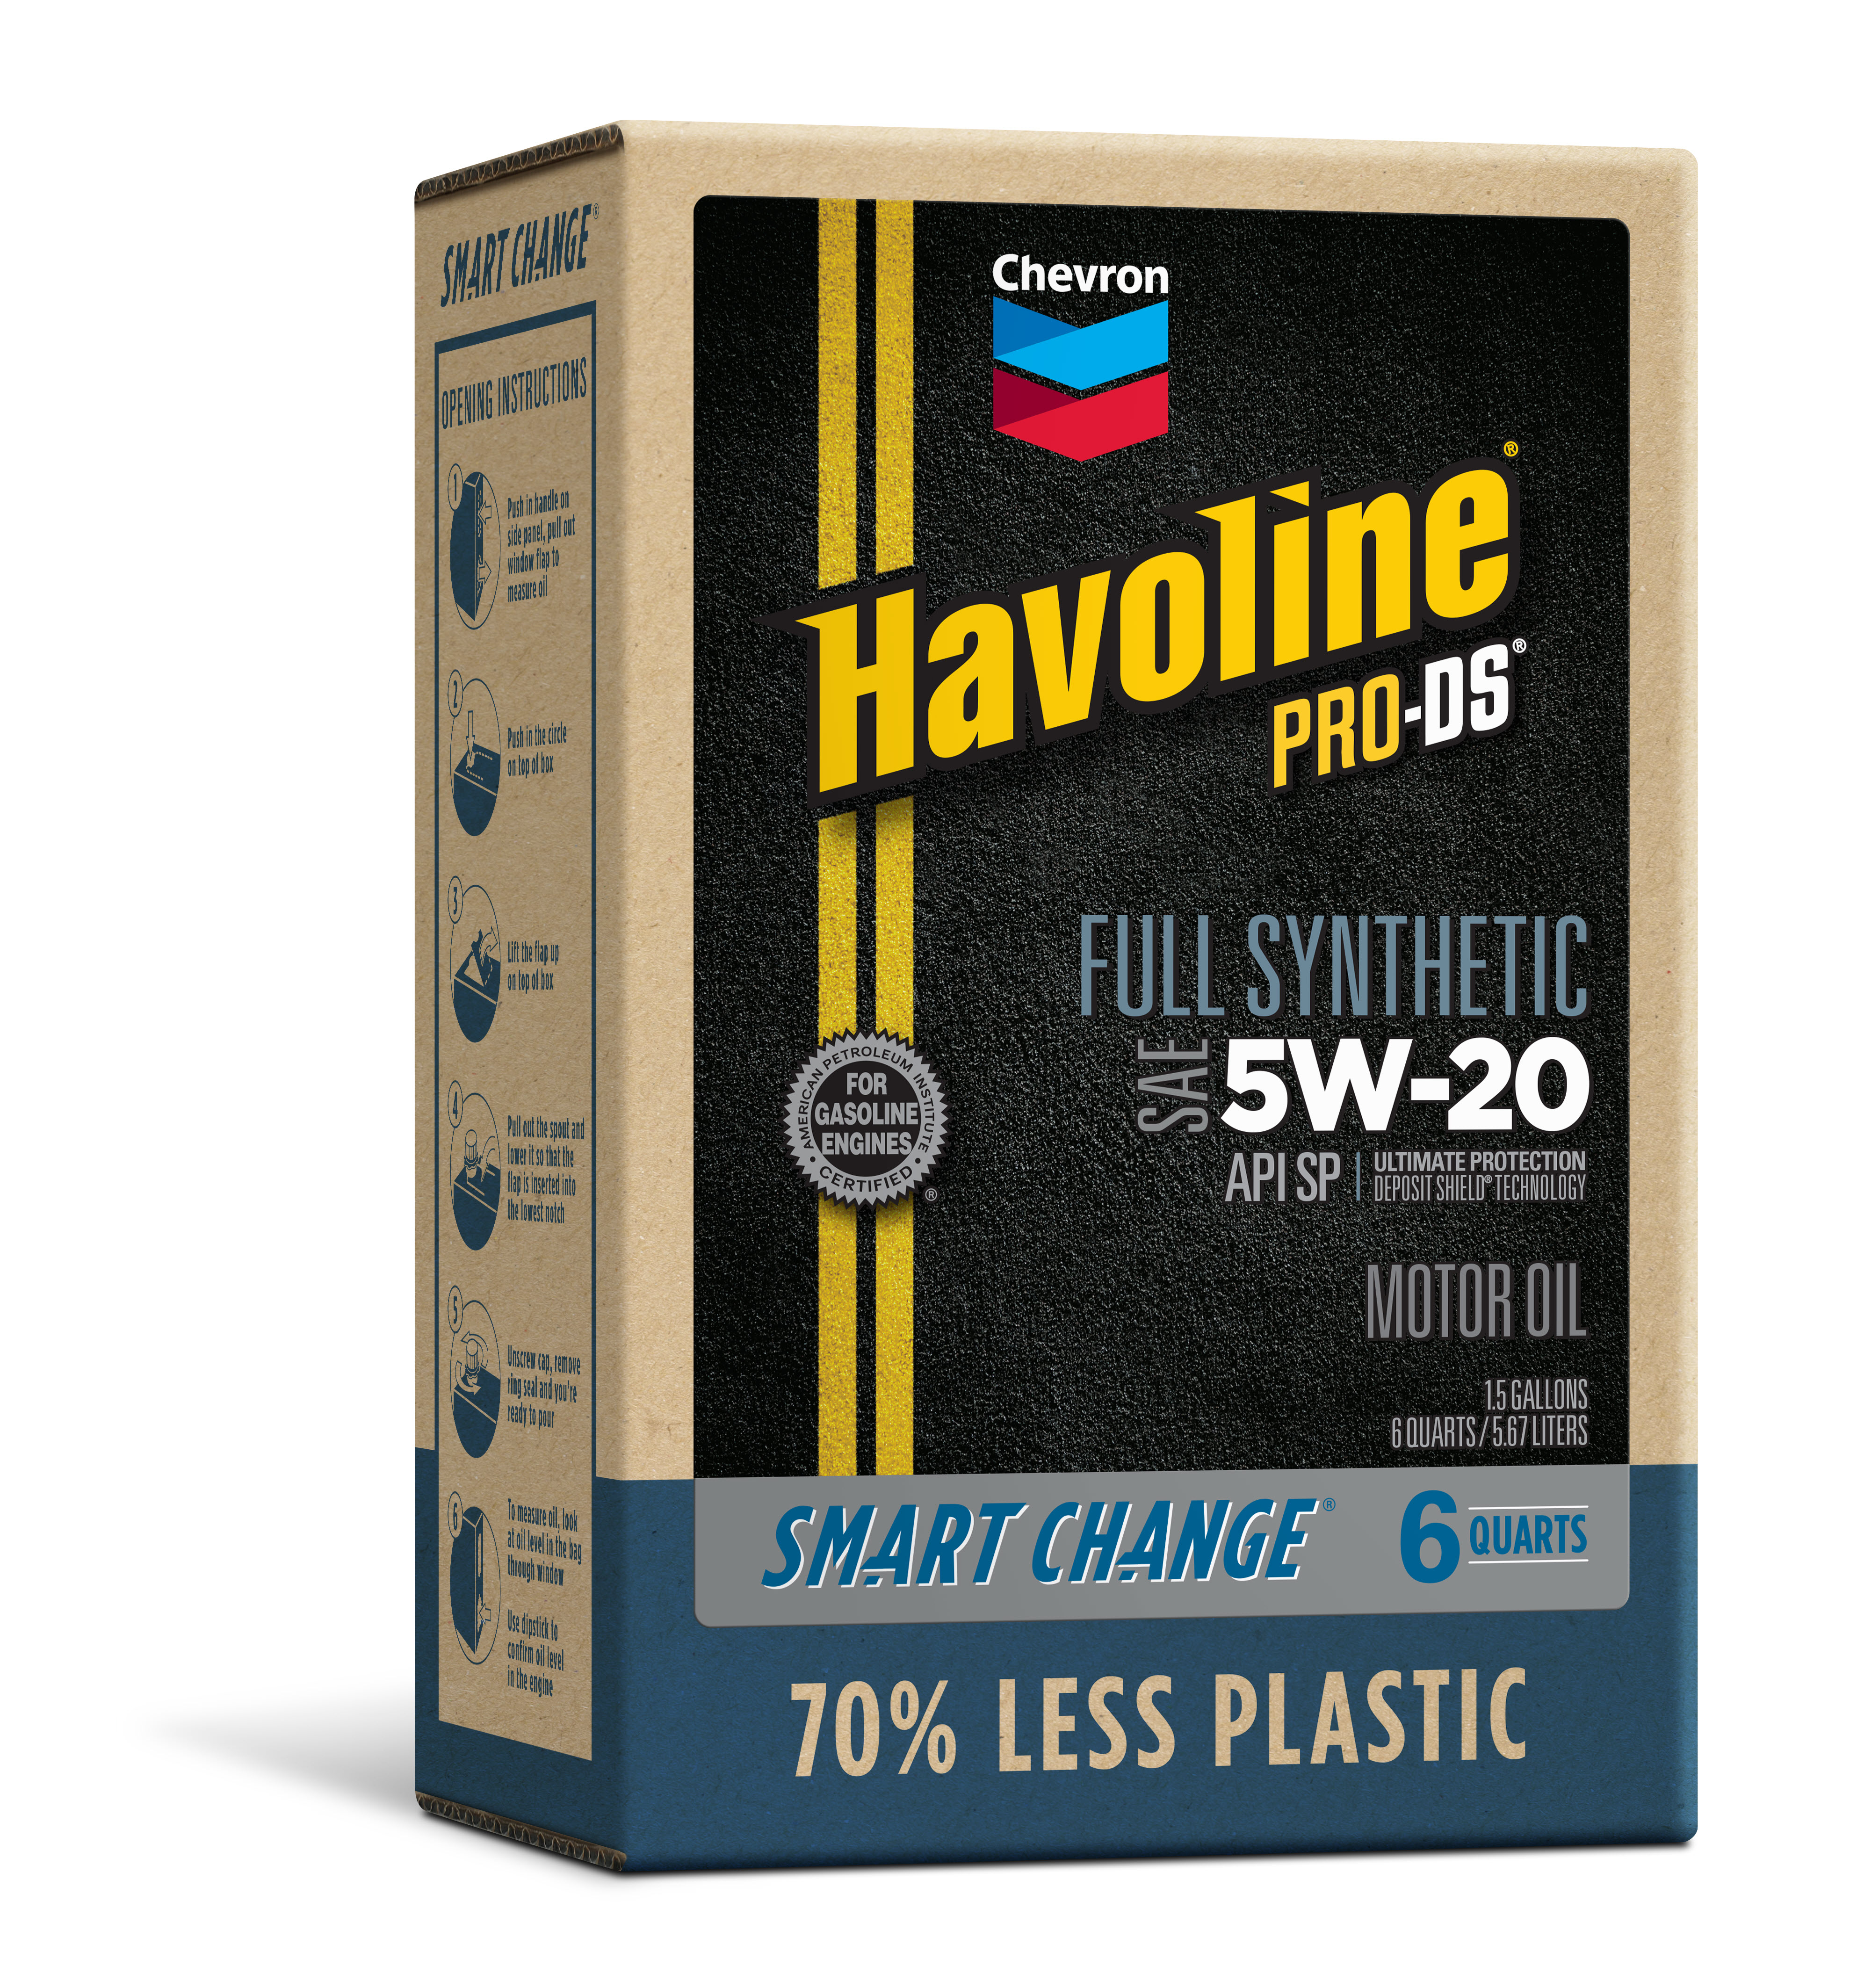 Chevron Havoline ProDS Full Synthetic Motor Oil 5W-20, 6 Quart - image 1 of 7